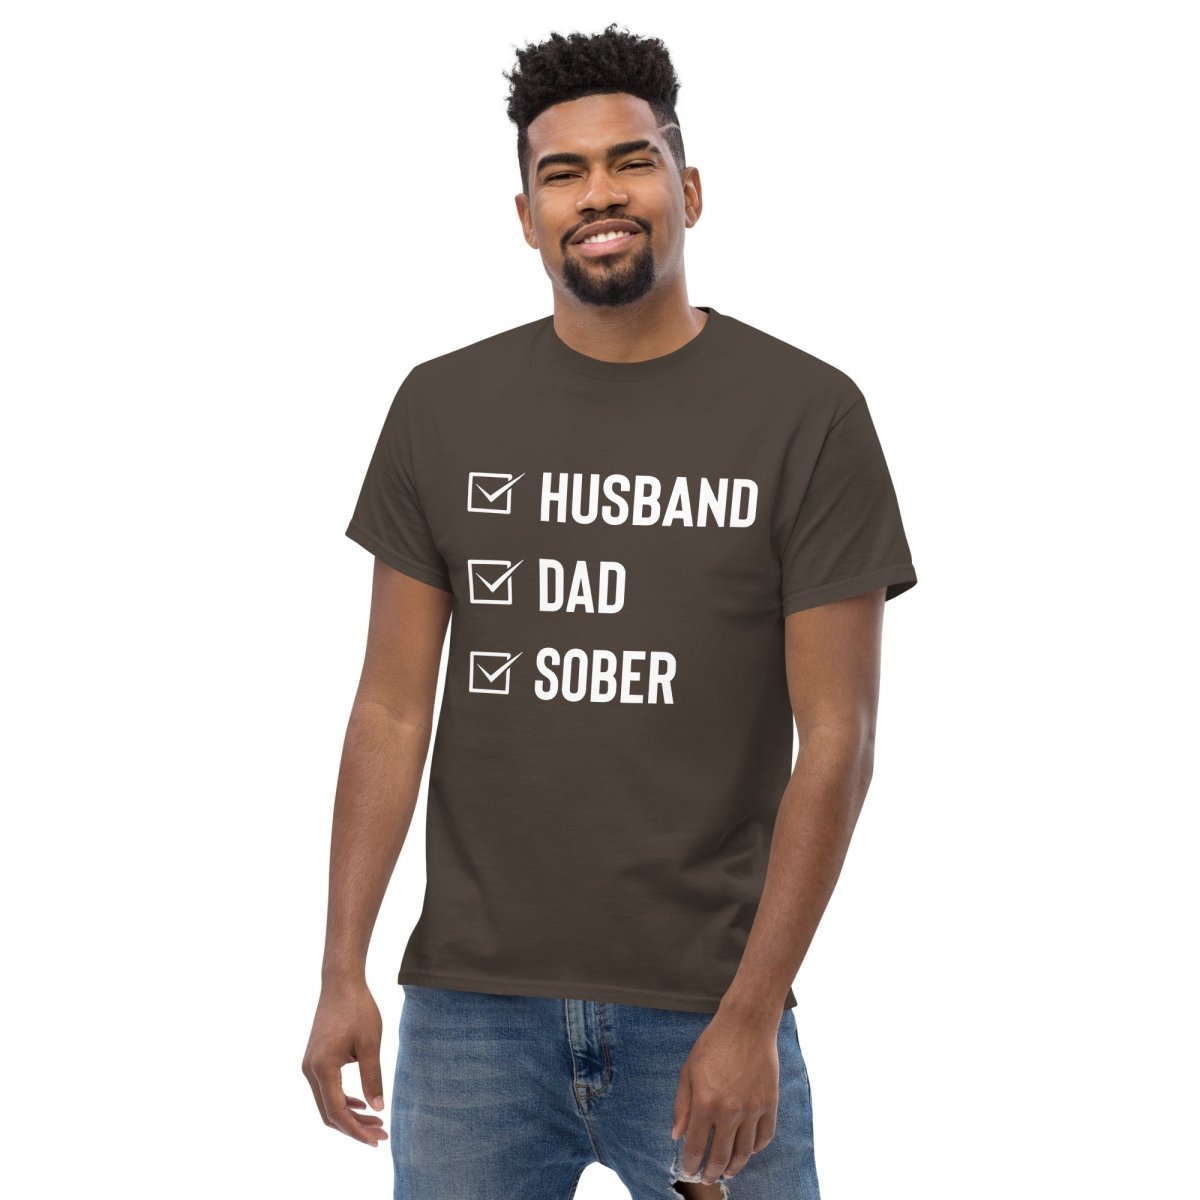 Husband Dad Sober - Men's Classic Tee Celebrating Sober Fatherhood - Clean & Sober